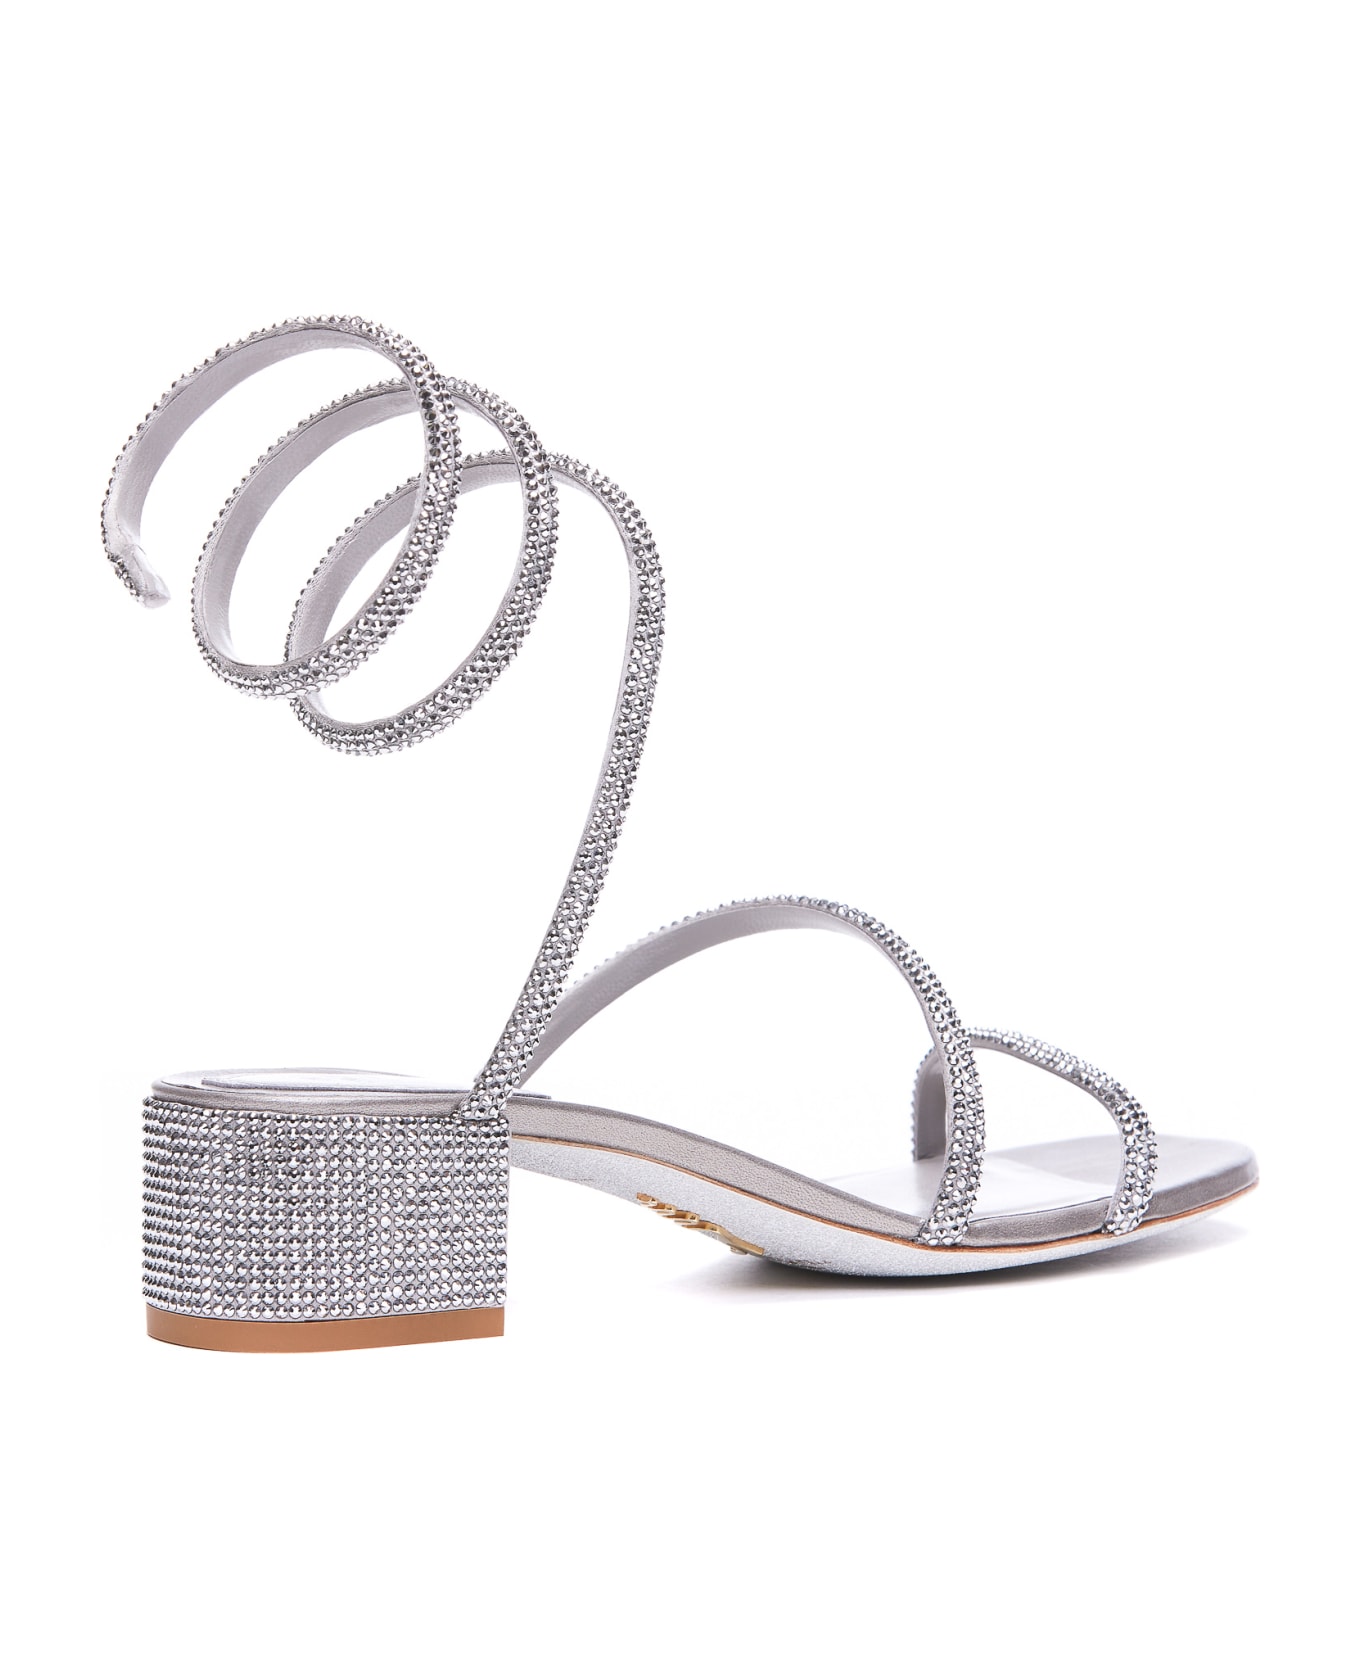 René Caovilla Cleo Pump Sandals - Silver